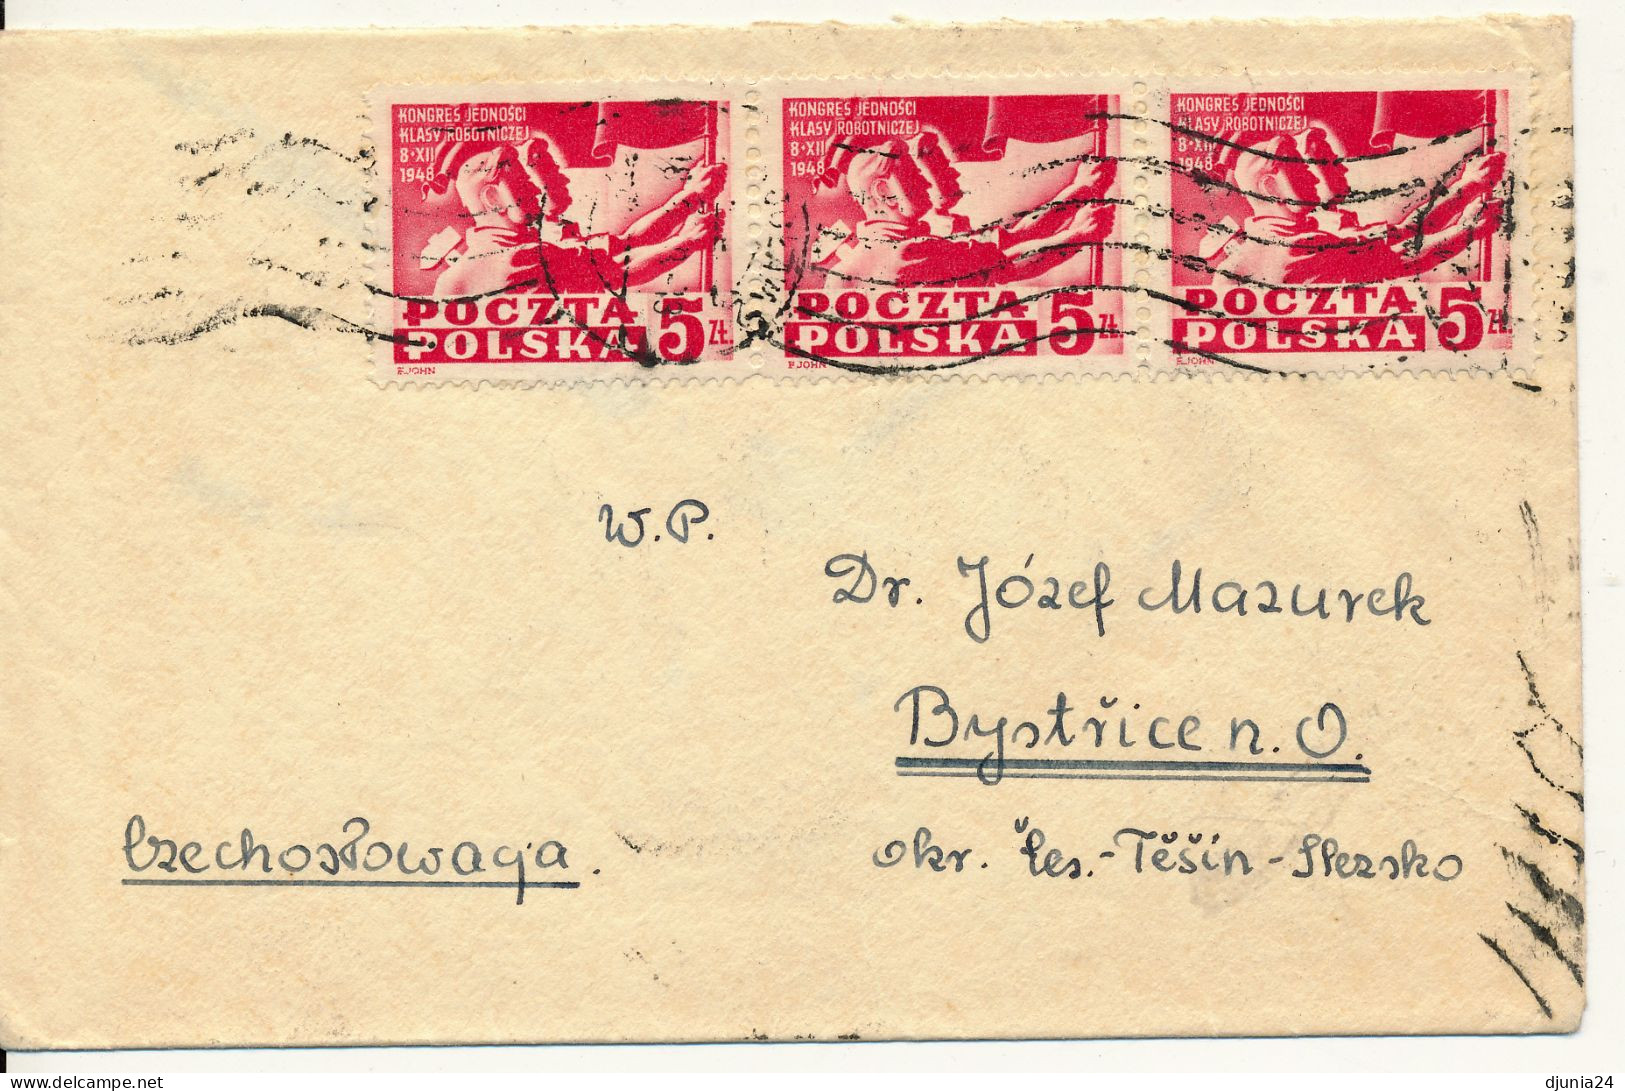 BF0076 / POLEN / POLSKA  -  WROCLAW - 1948  ,  Parteien-Vereinigungskongress - Michel 505 - Covers & Documents